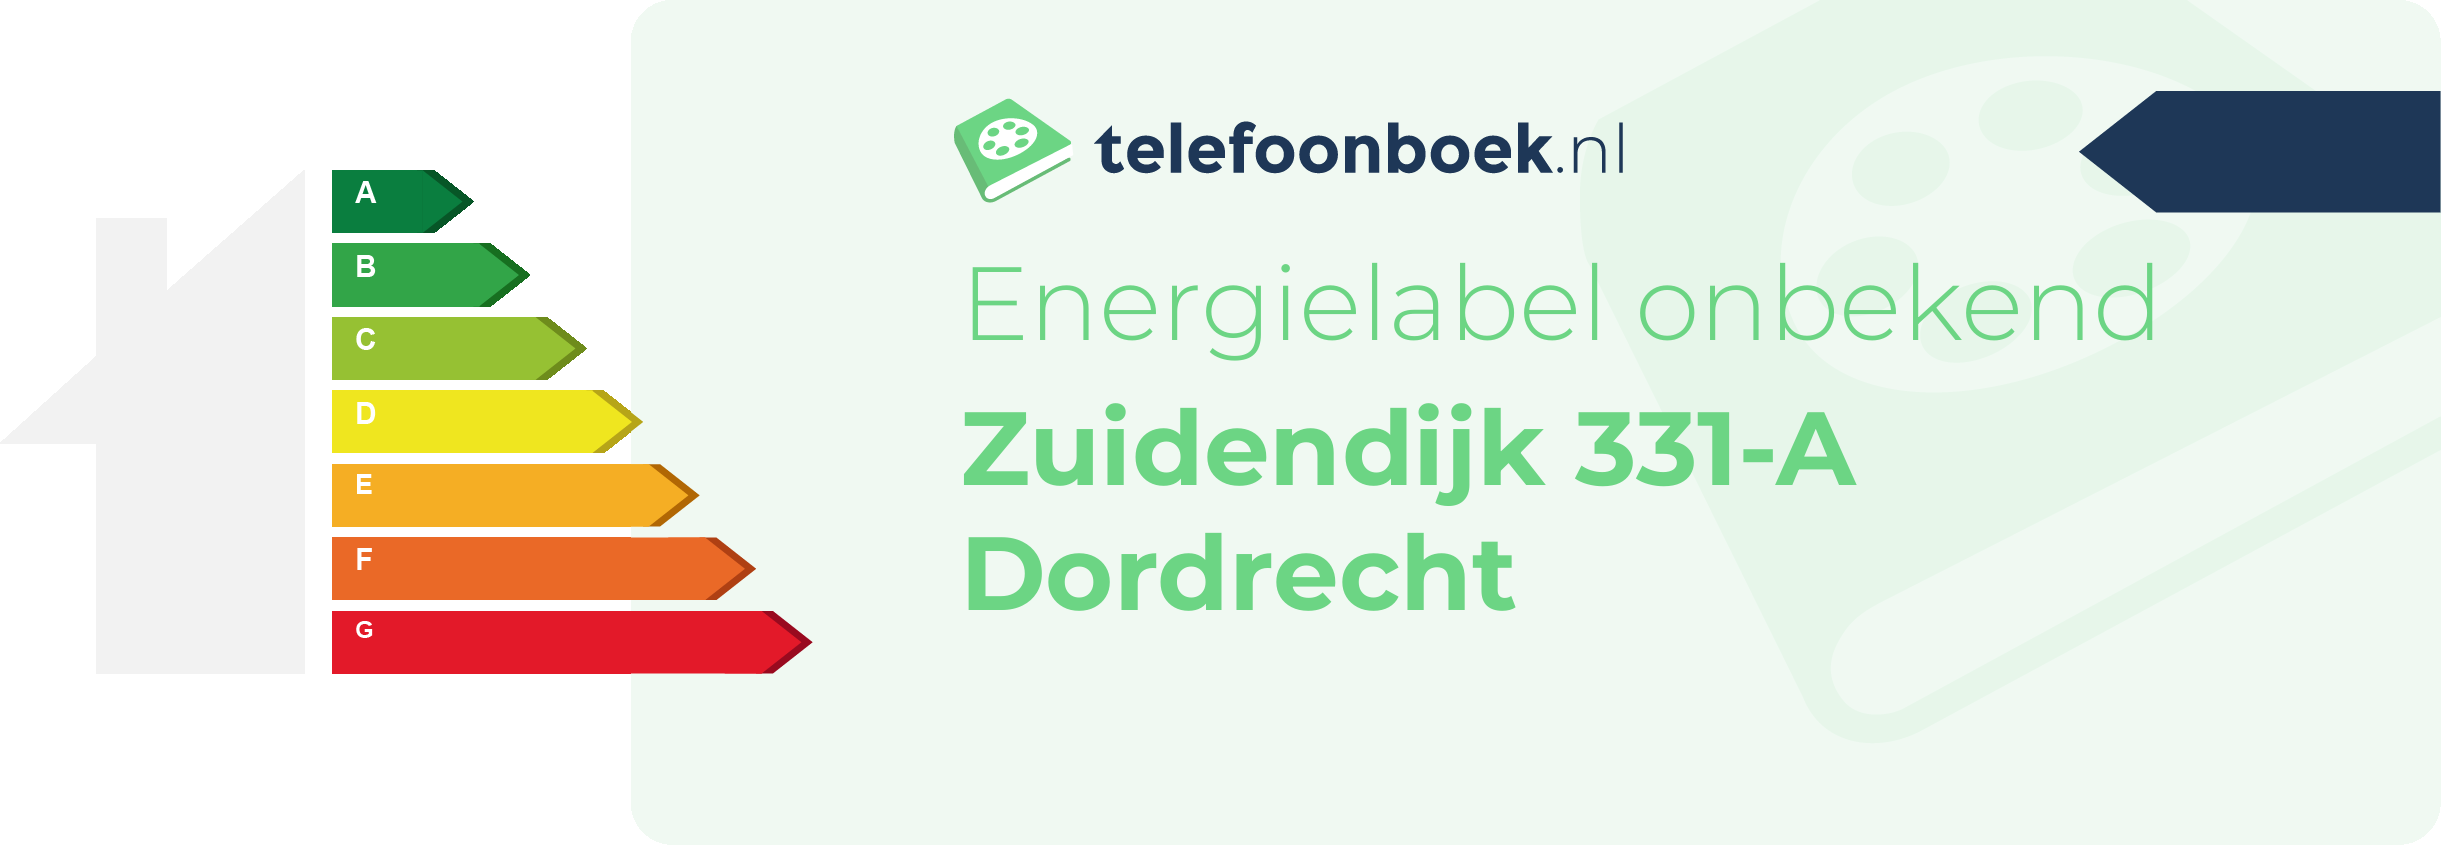 Energielabel Zuidendijk 331-A Dordrecht